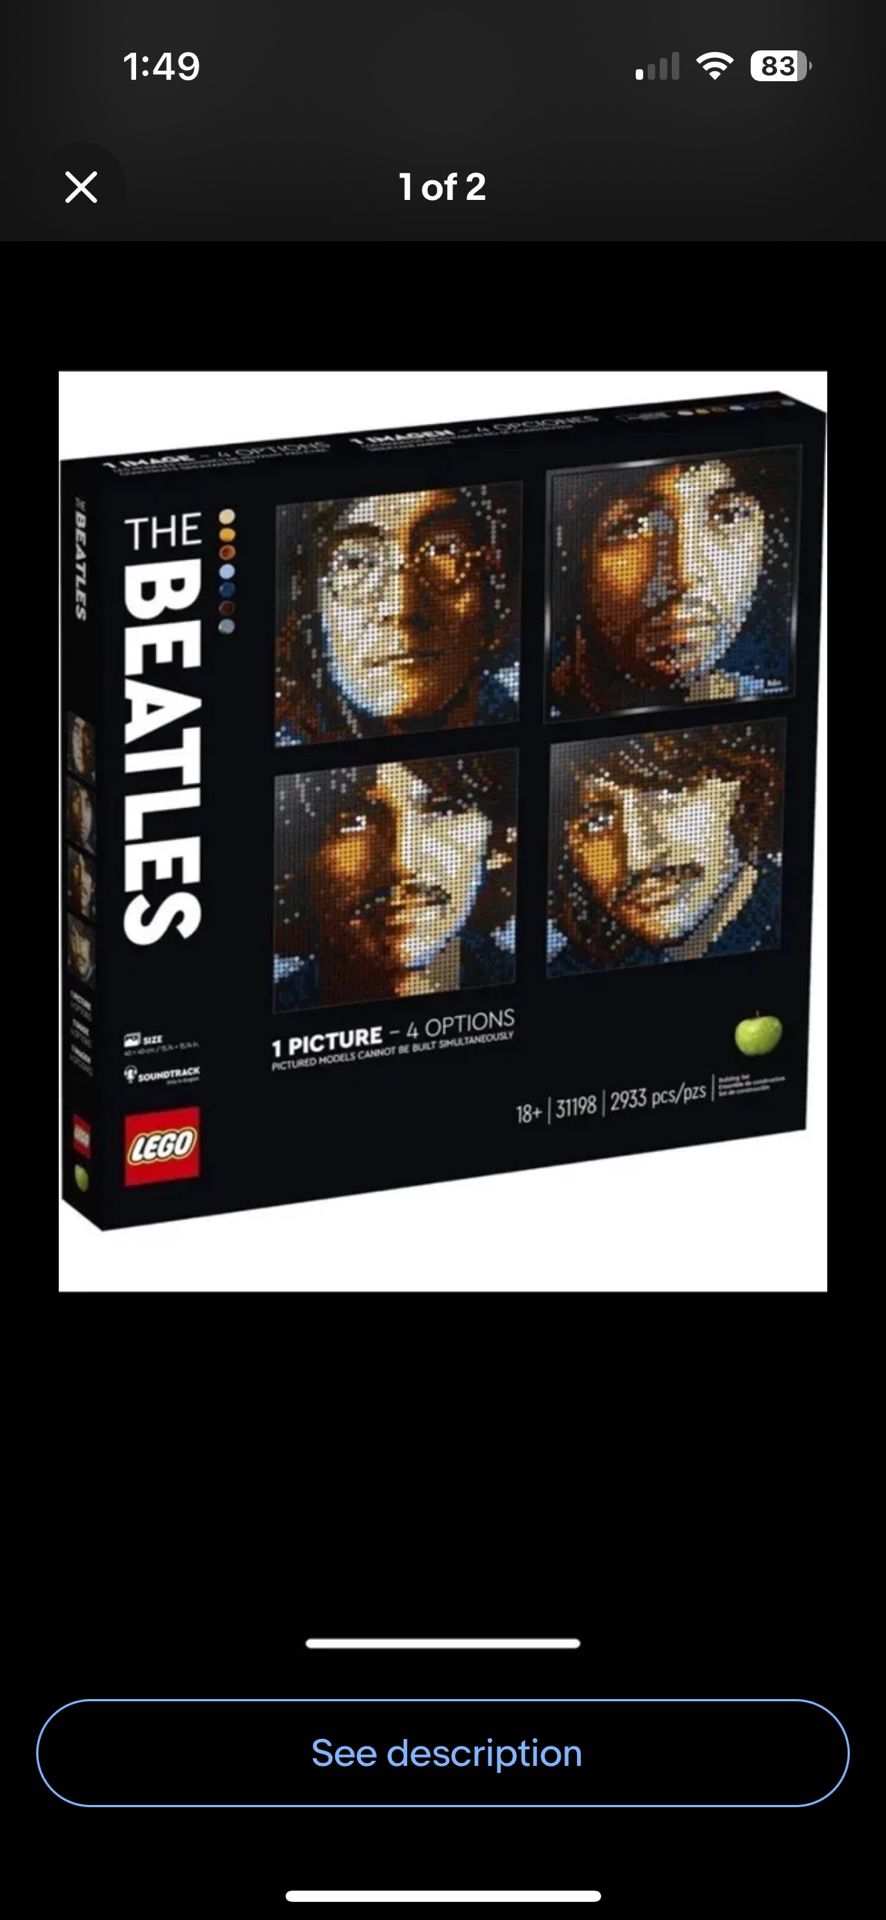 LEGO SET - The Beatles - Sealed Box 